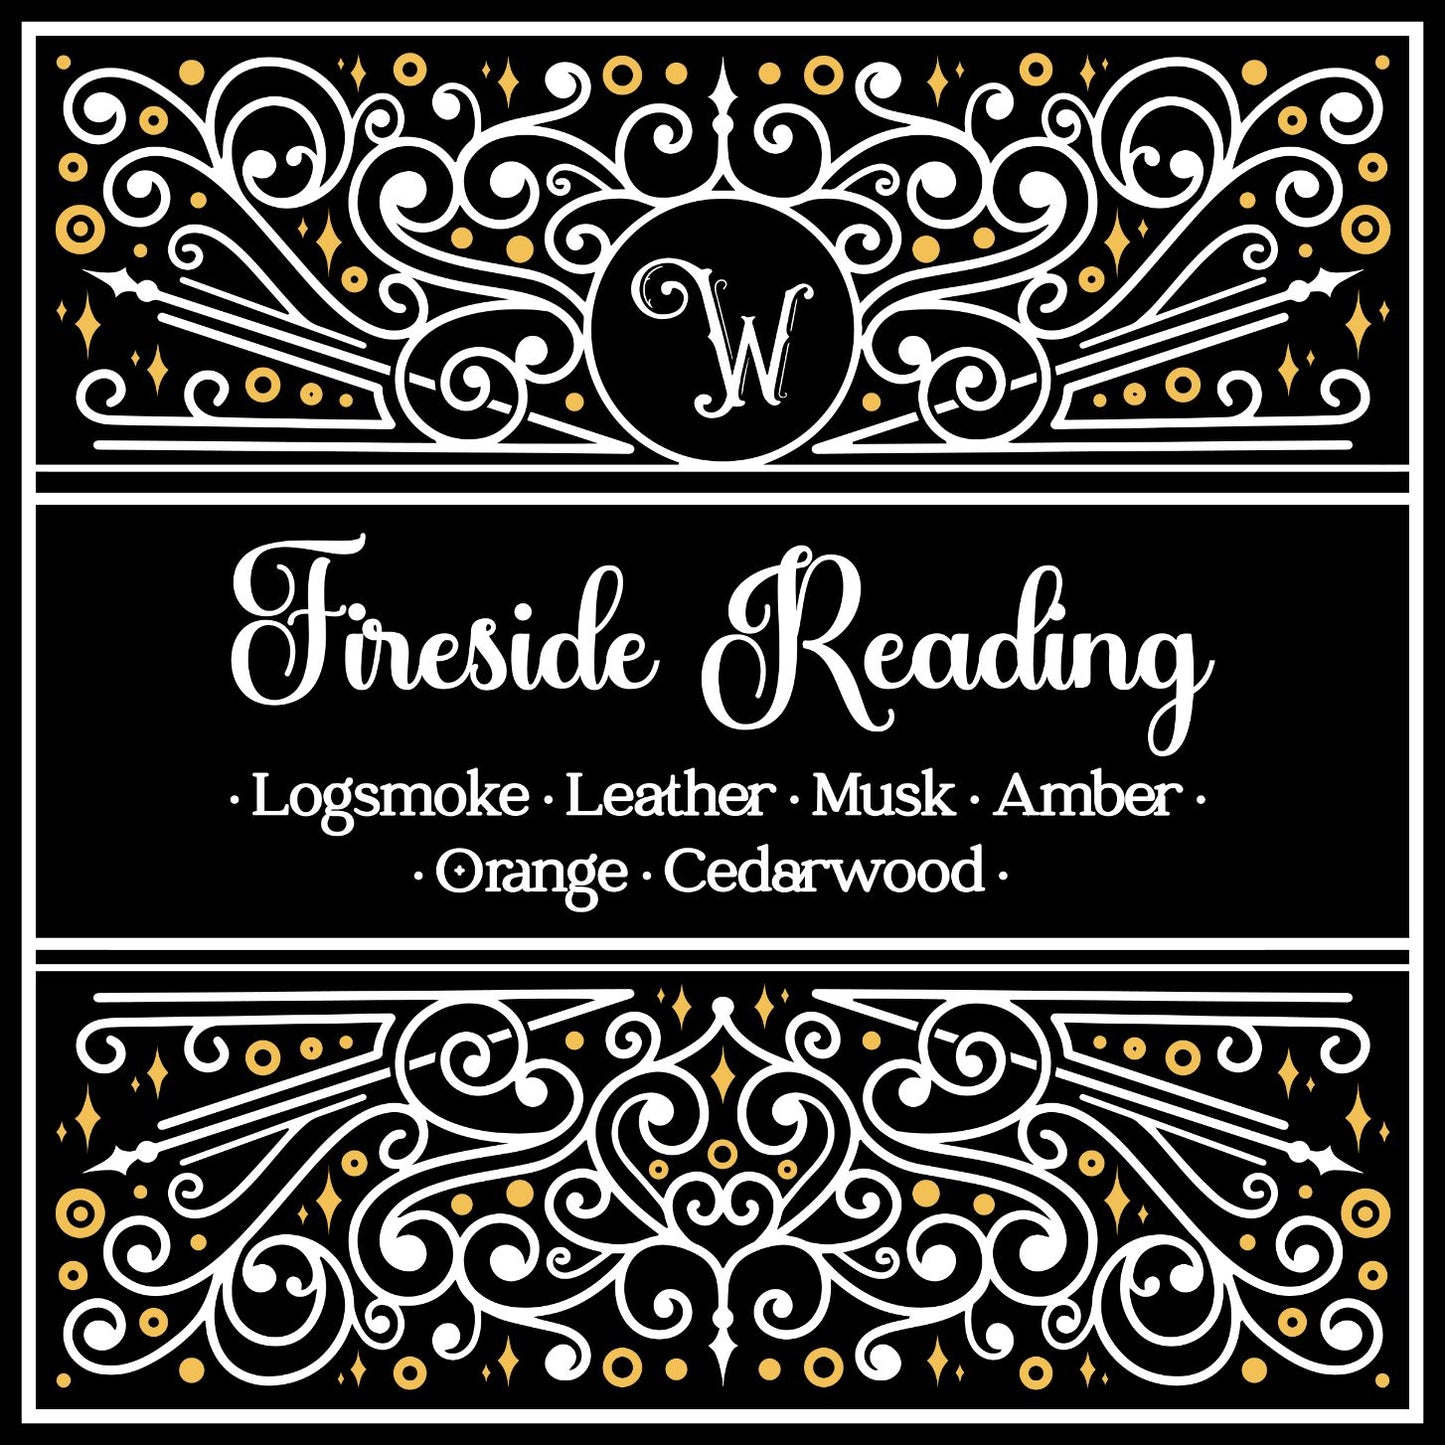 Fireside Reading - Crackling Log Fire